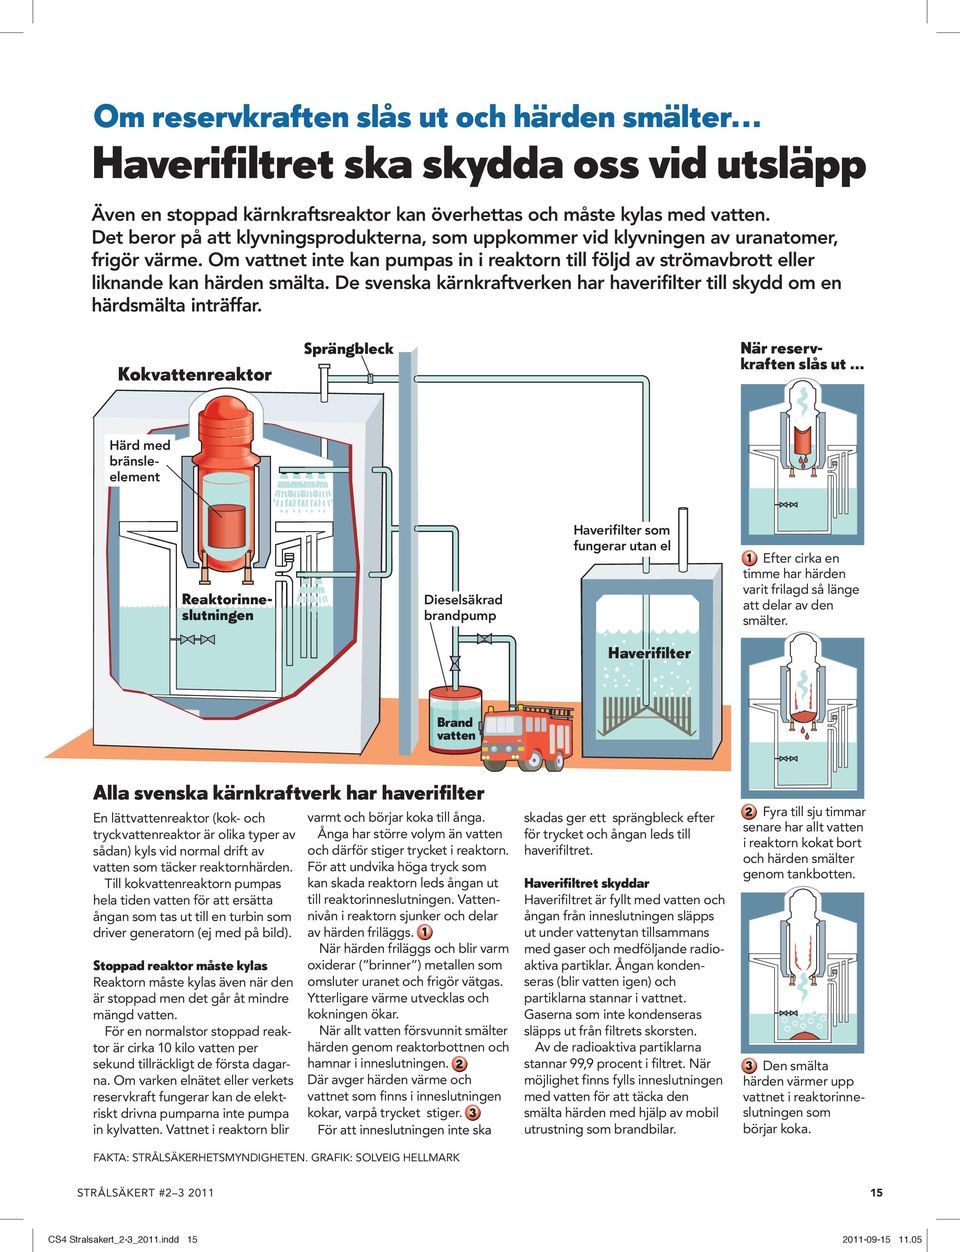 De svenska kärnkraftverken har haverifilter till skydd om en härdsmälta inträffar. Kokvattenreaktor Sprängbleck När reservkraften slås ut.